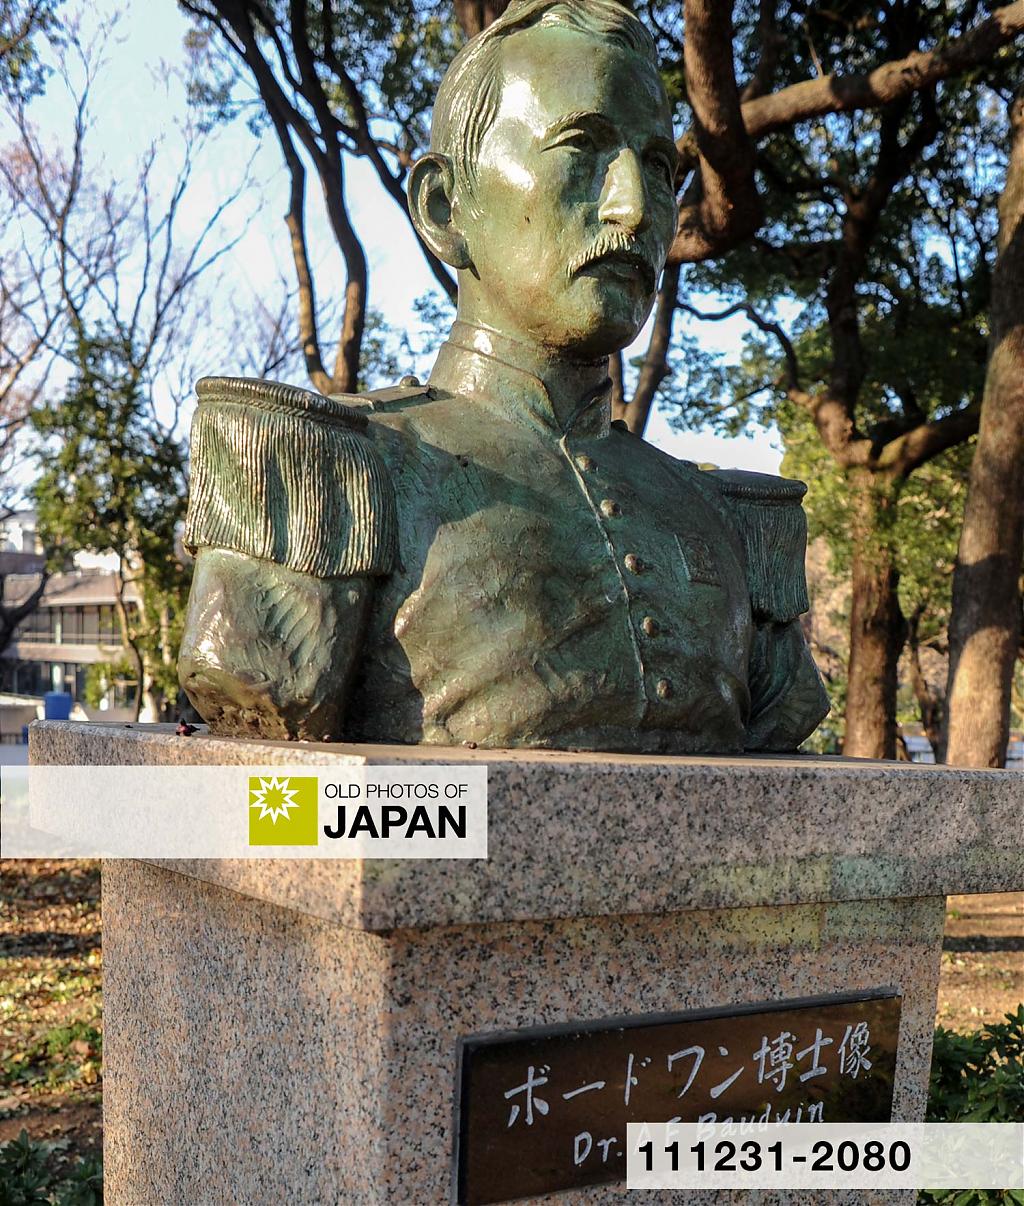 Statue of Anthonius Franciscus Bauduin in Ueno Park, Tokyo